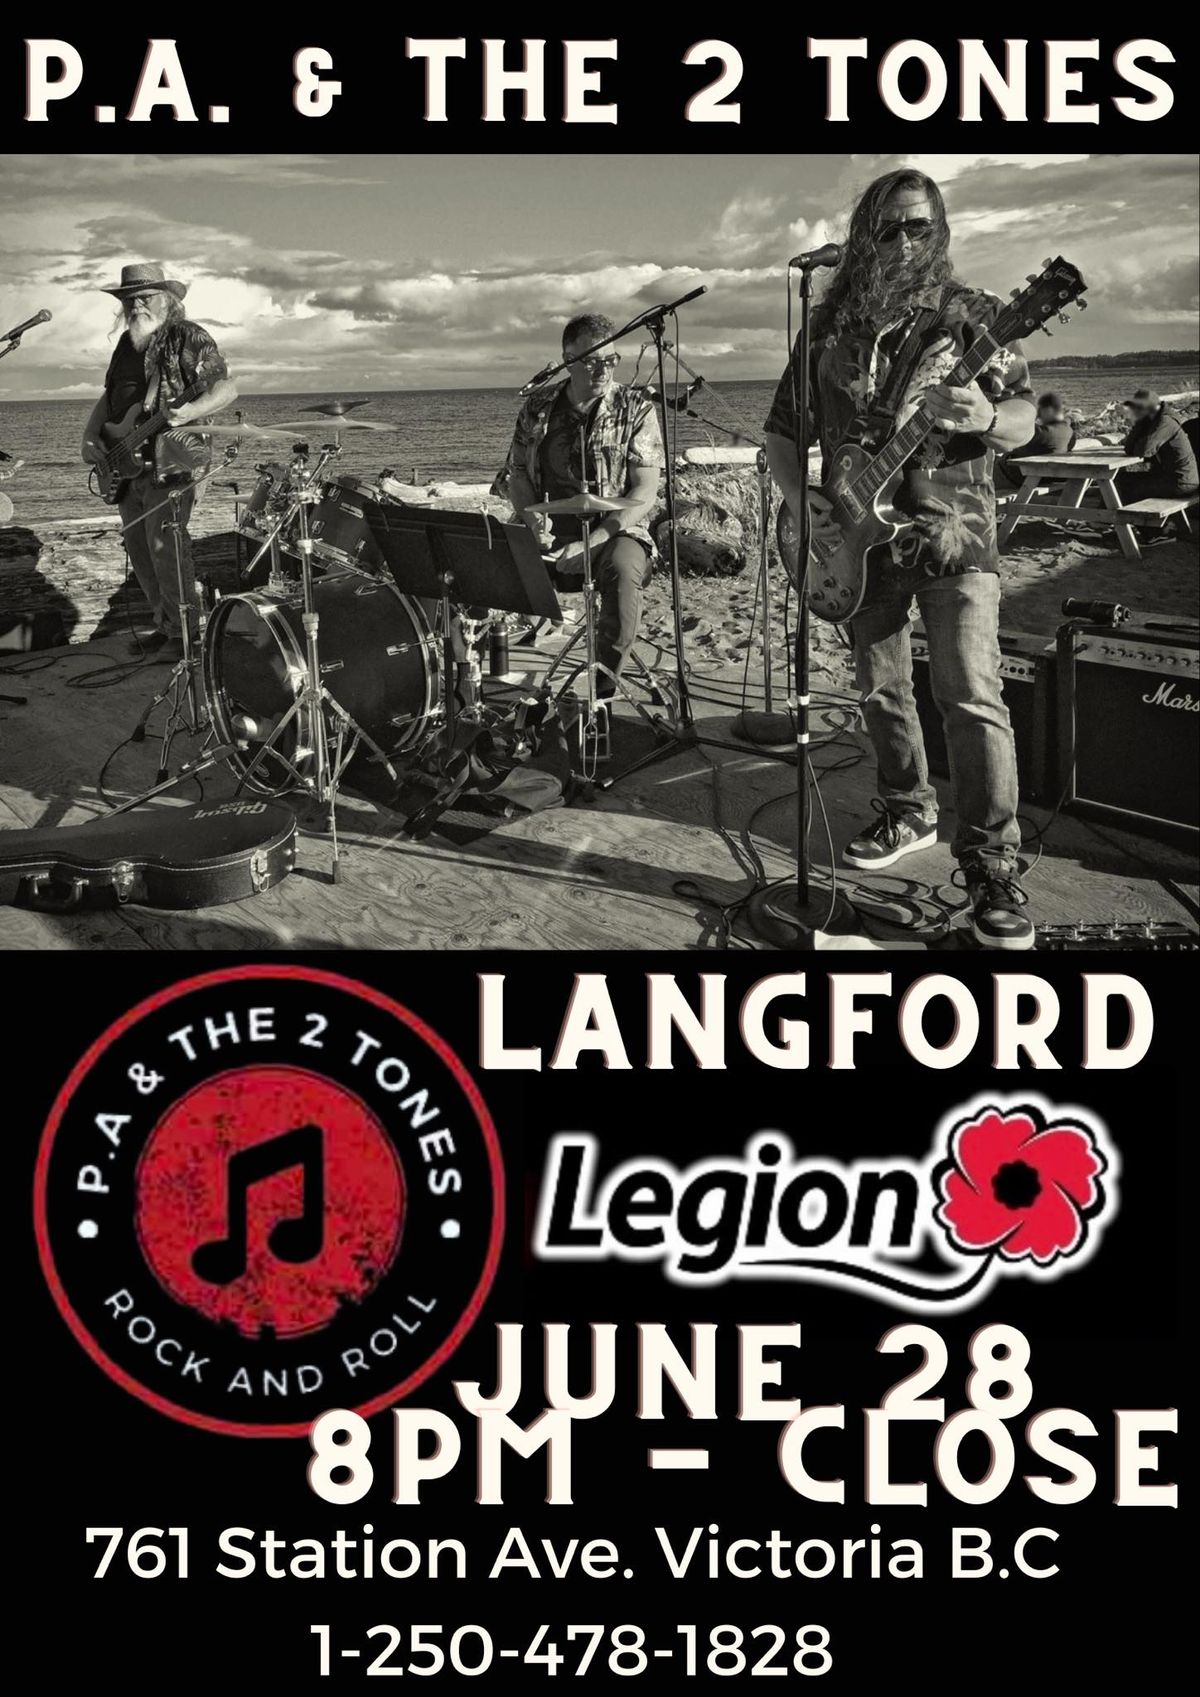 Langford Legion presents P.A. & the 2 Tones